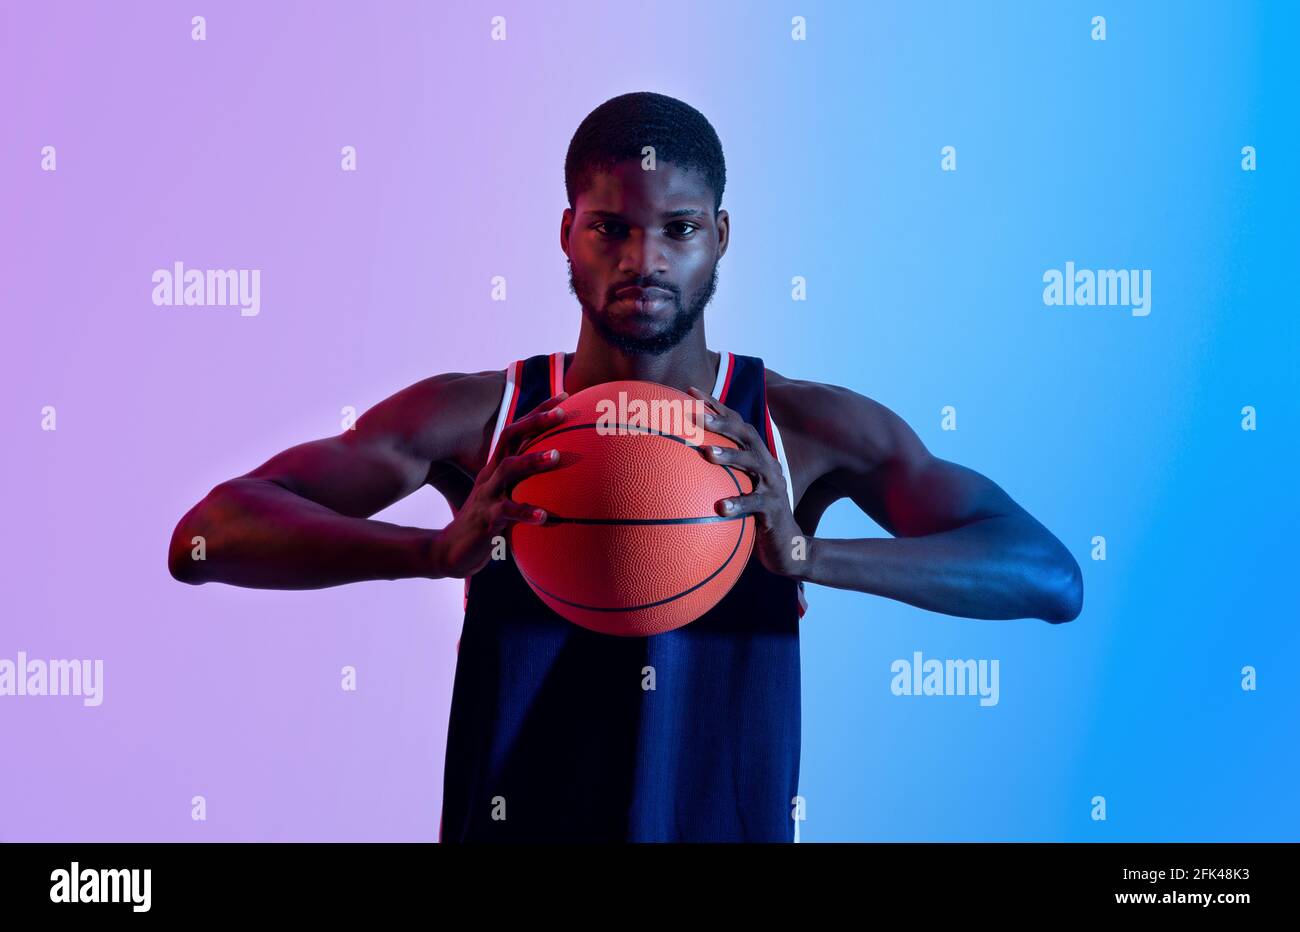 Ritratto di un giovane basketballer nero determinato che tiene la palla e guarda alla fotocamera in luce al neon Foto Stock